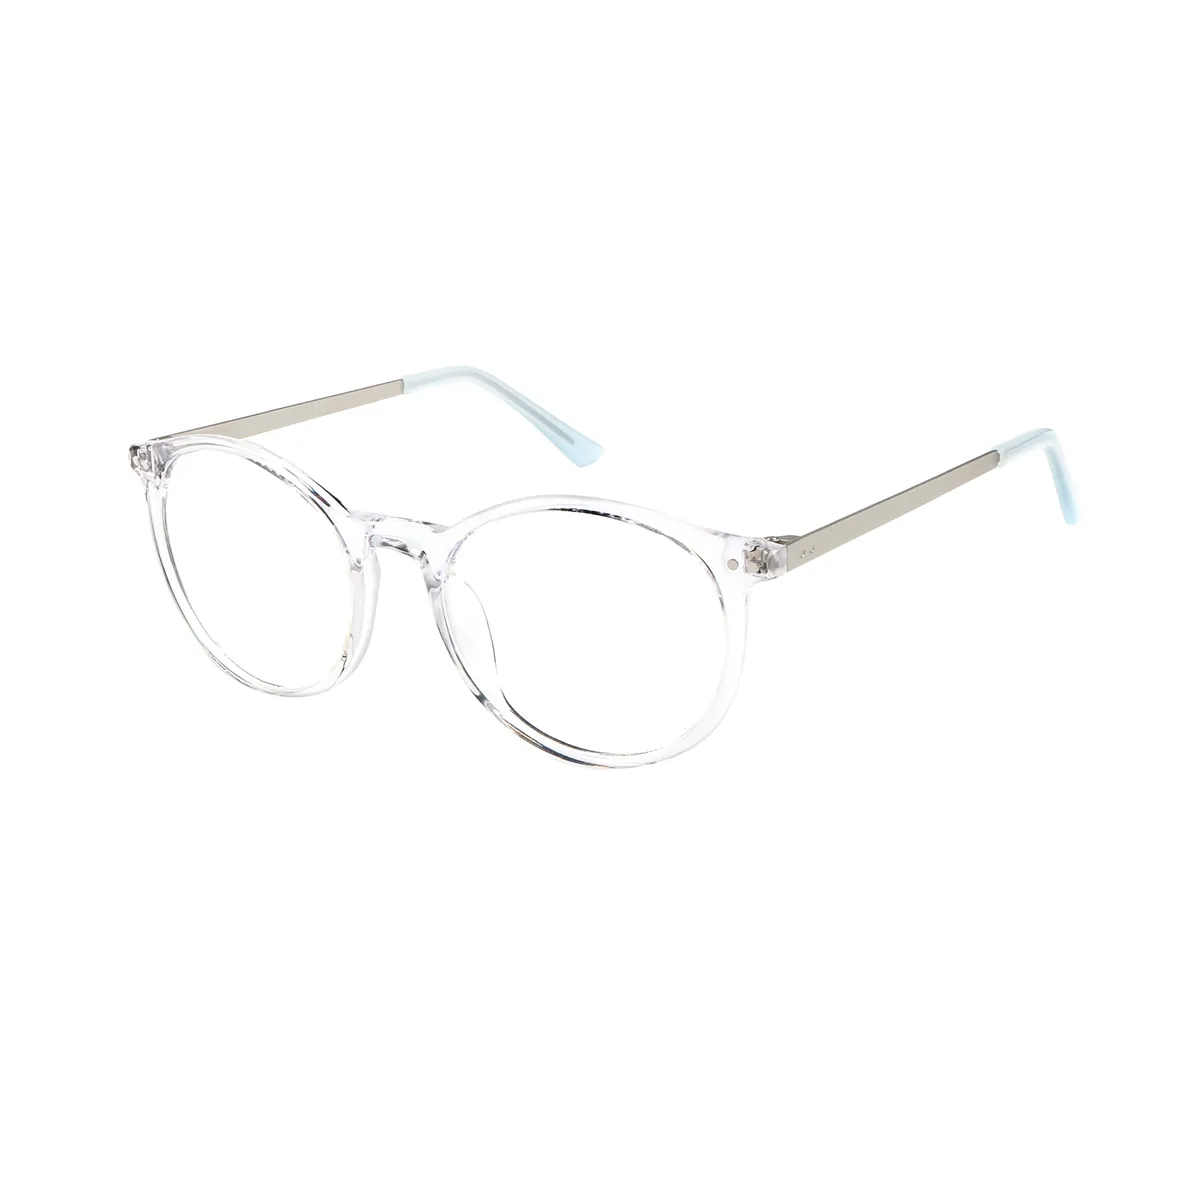 Kenna - Oval Translucent Glasses for Men & Women - EFE